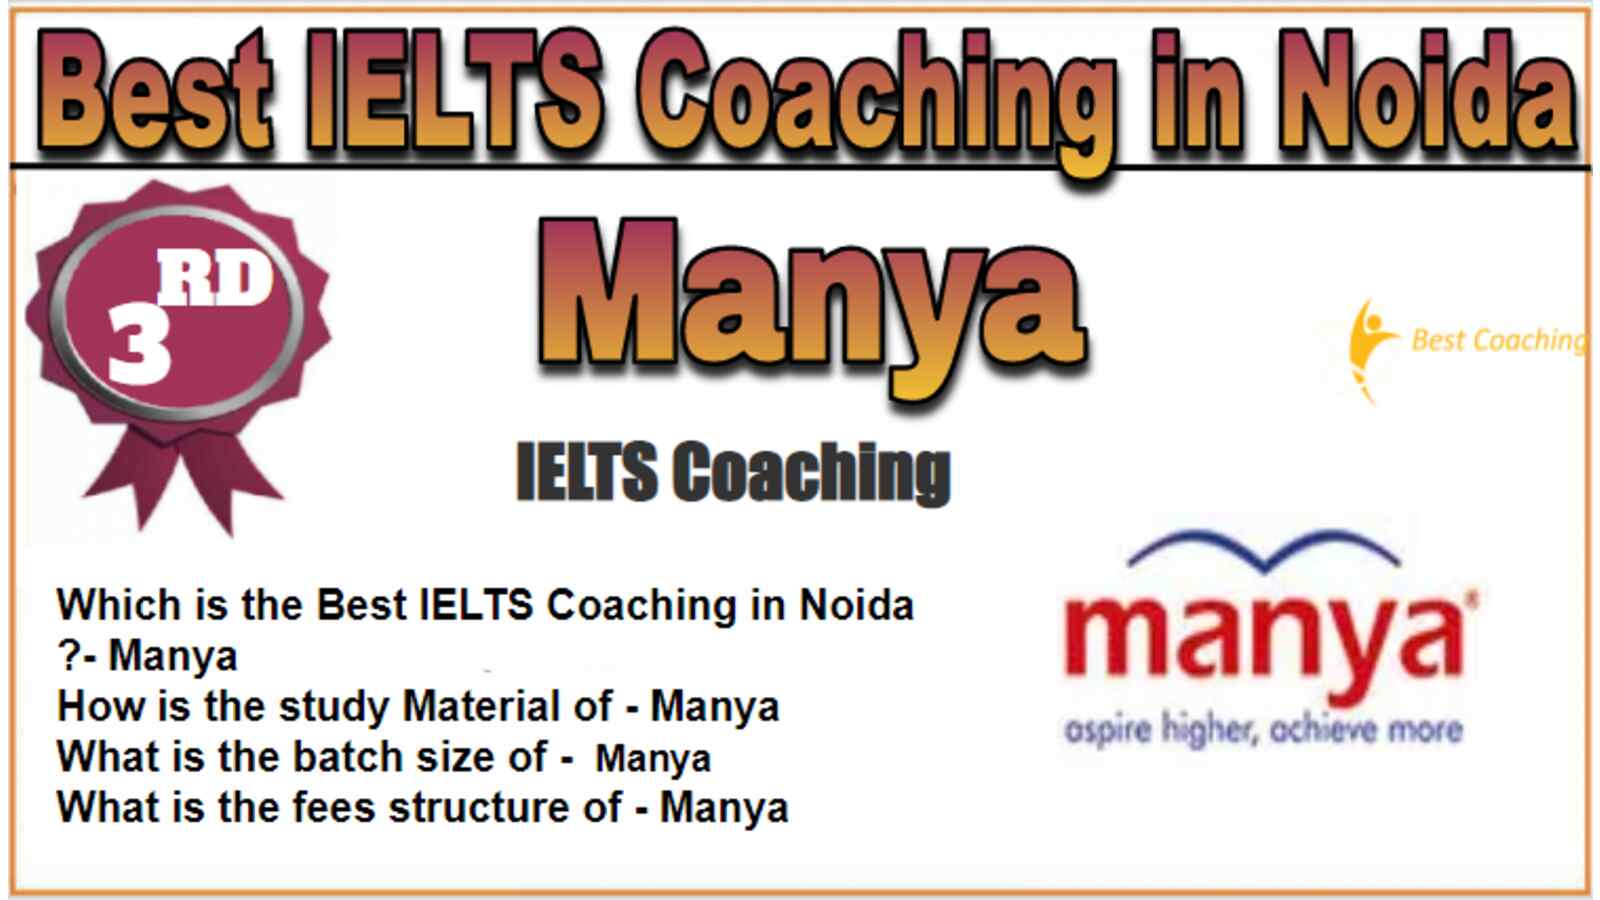 Rank 3 Best IELTS Coaching in Noida